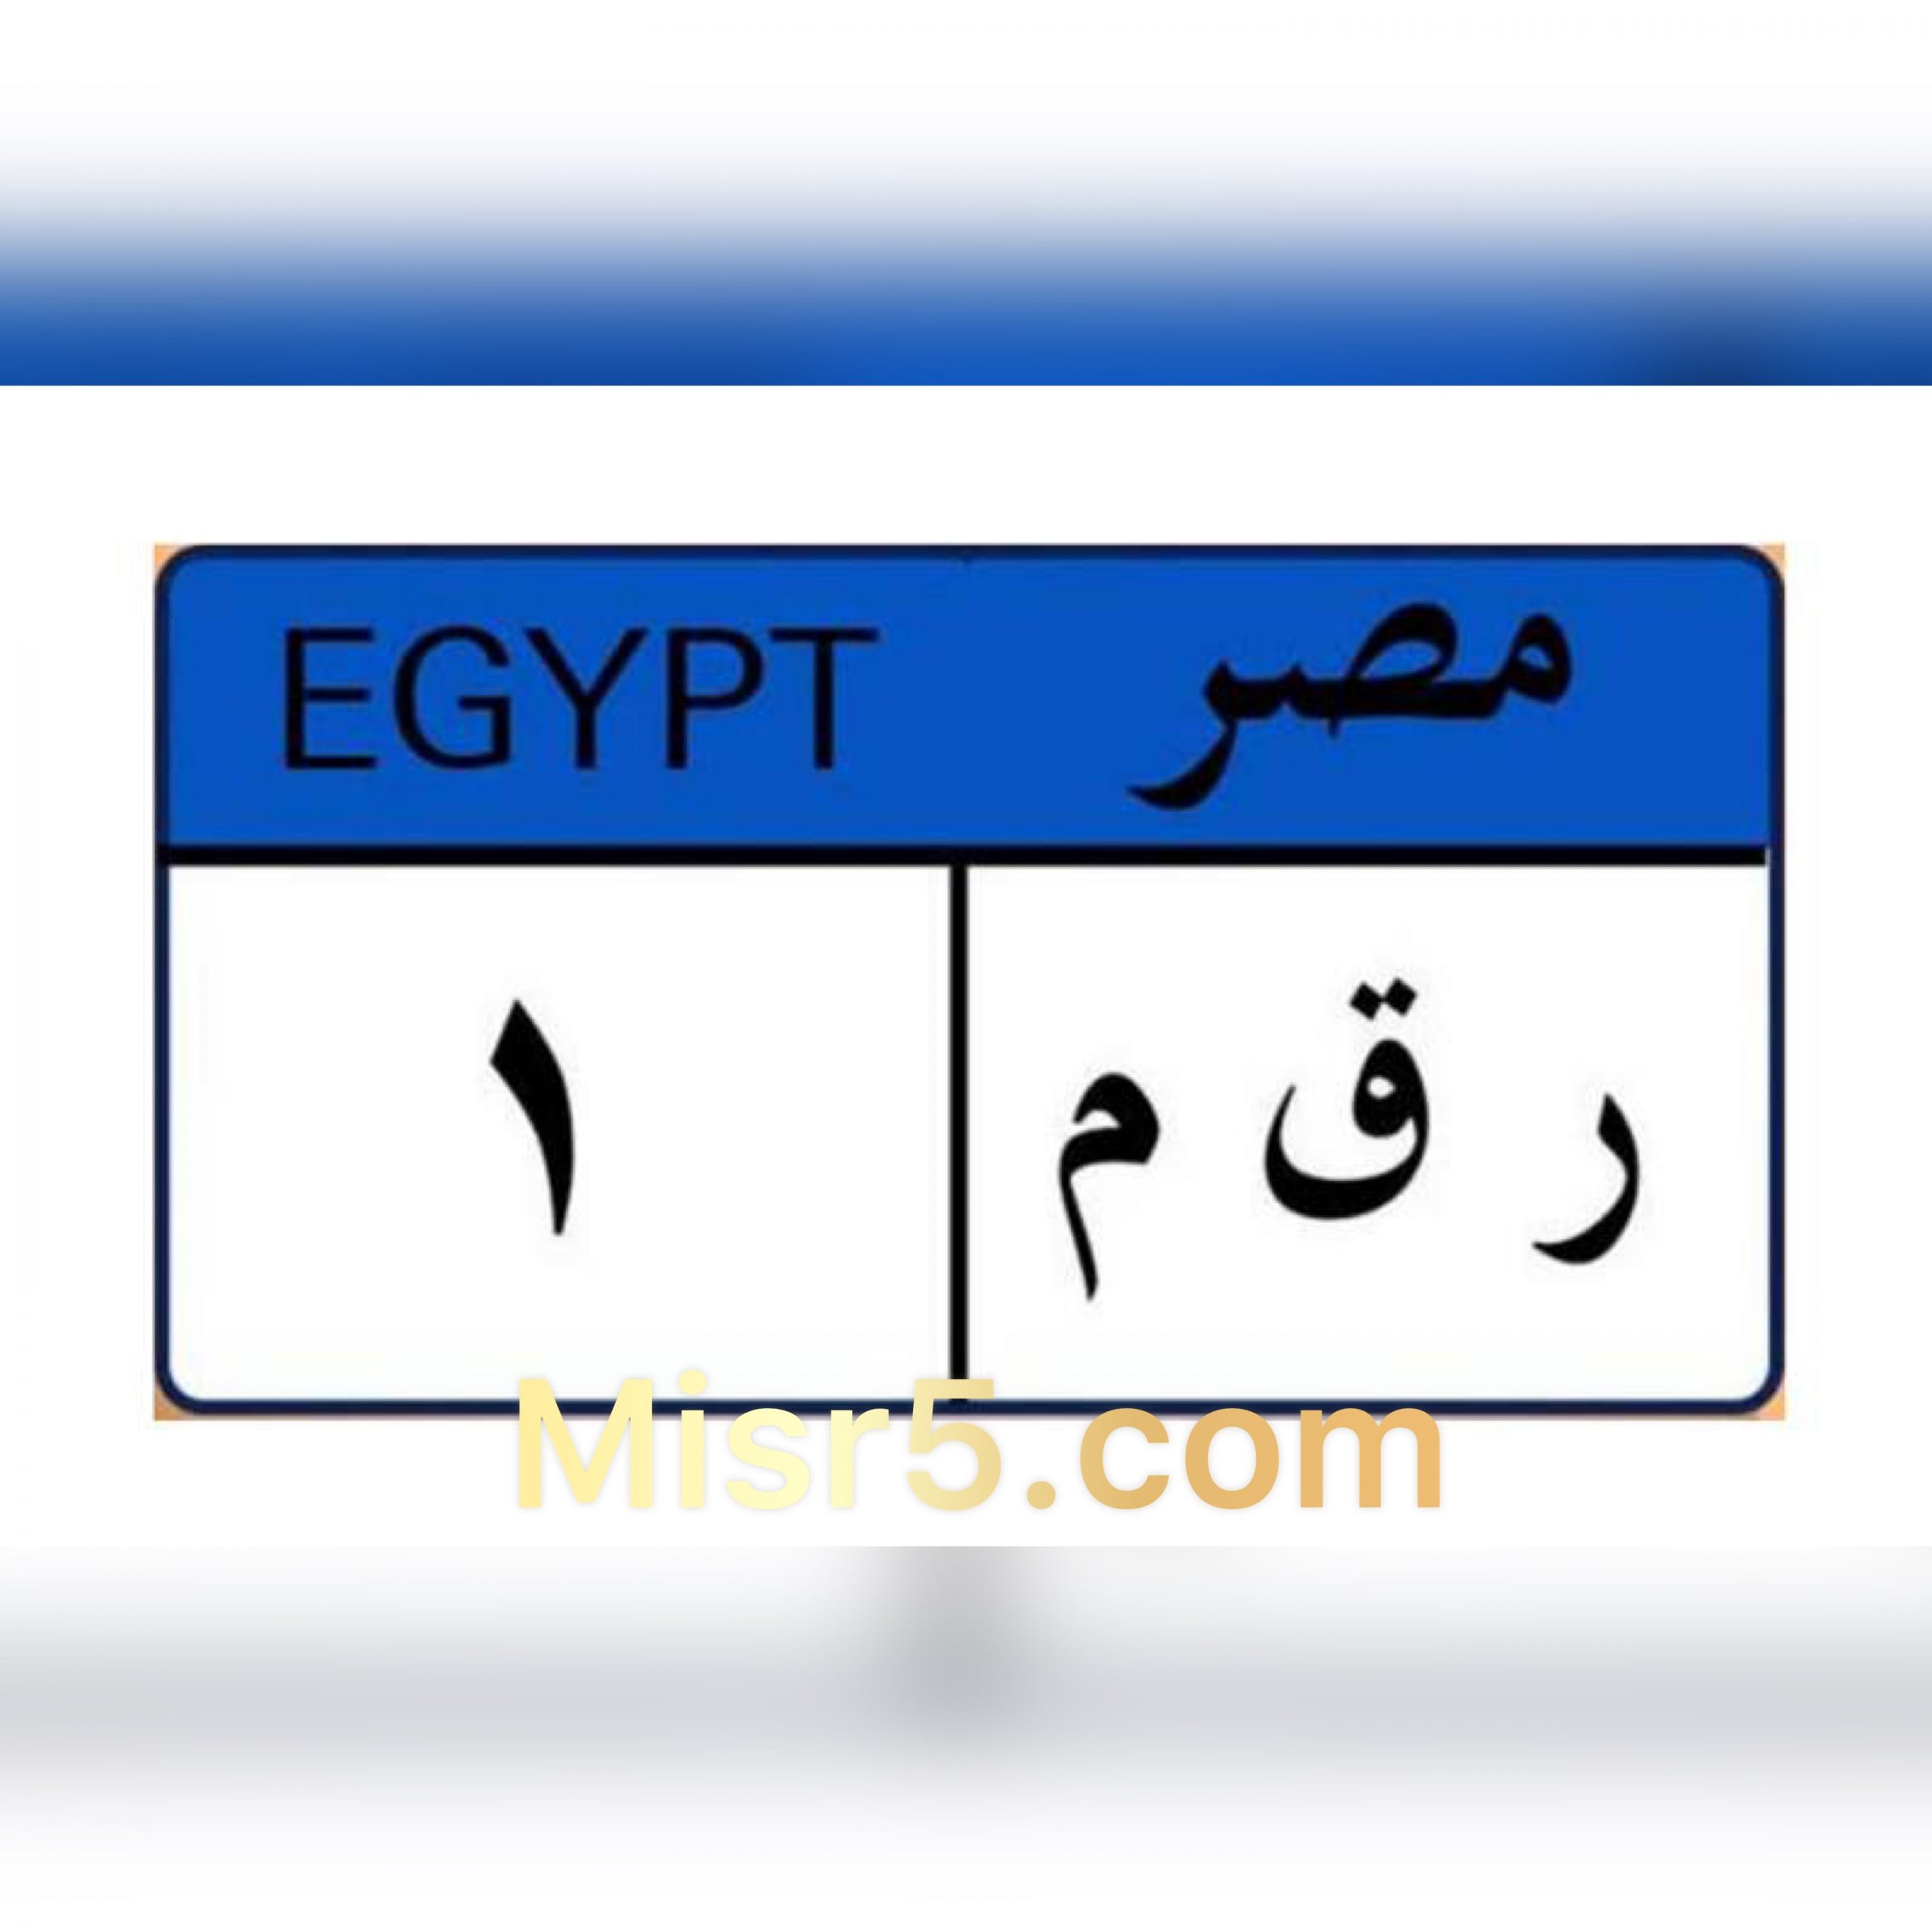 يمكنك الآن الاستعلام على مخالفات المرور برقم اللوحة من خلال بوابة مصر الرقمية 2021